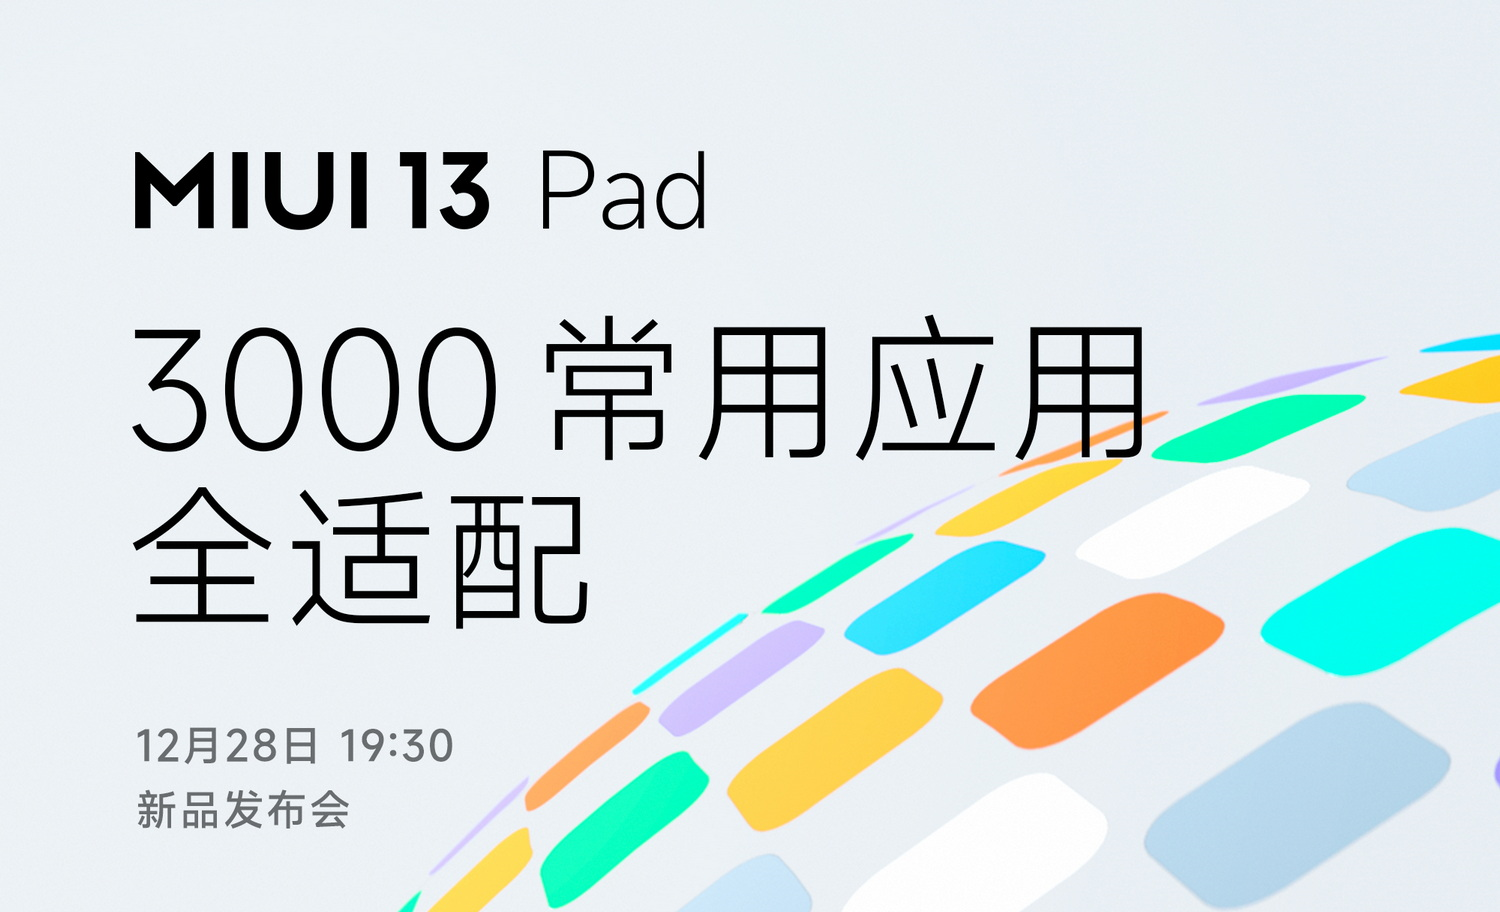 Xiaomi zaprezentuje specjalną wersję MIUI 13 na tablety